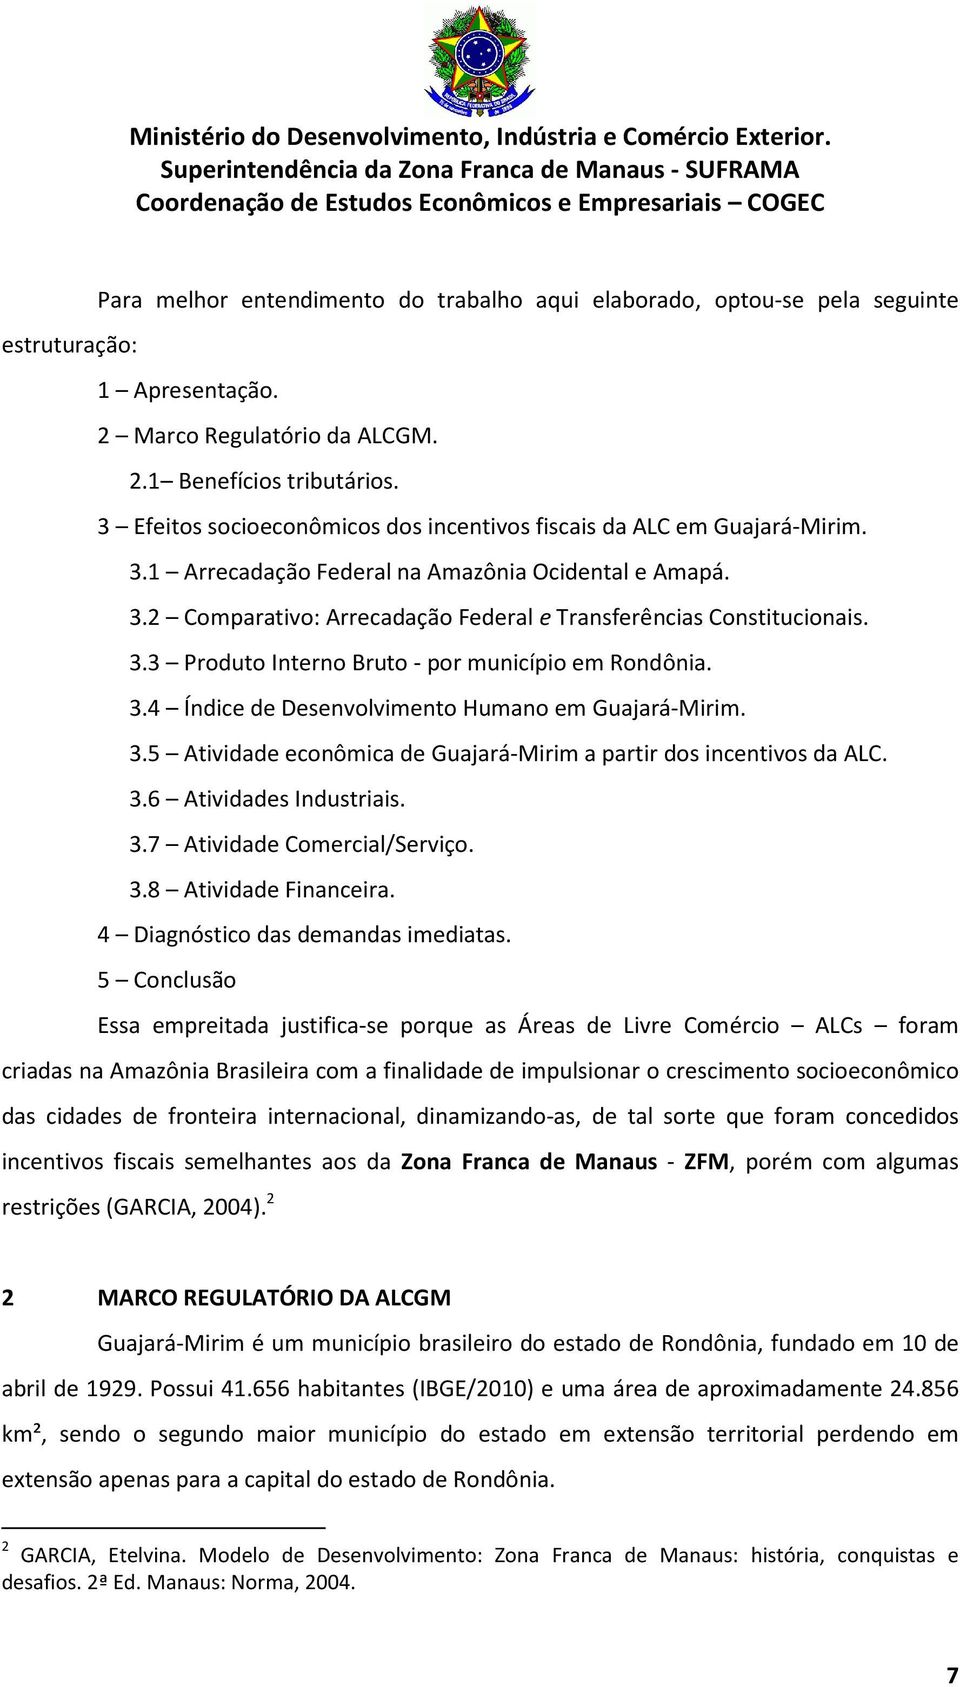 3.3 Produto Interno Bruto - por município em Rondônia. 3.4 Índice de Desenvolvimento Humano em Guajará-Mirim. 3.5 Atividade econômica de Guajará-Mirim a partir dos incentivos da ALC. 3.6 Atividades Industriais.